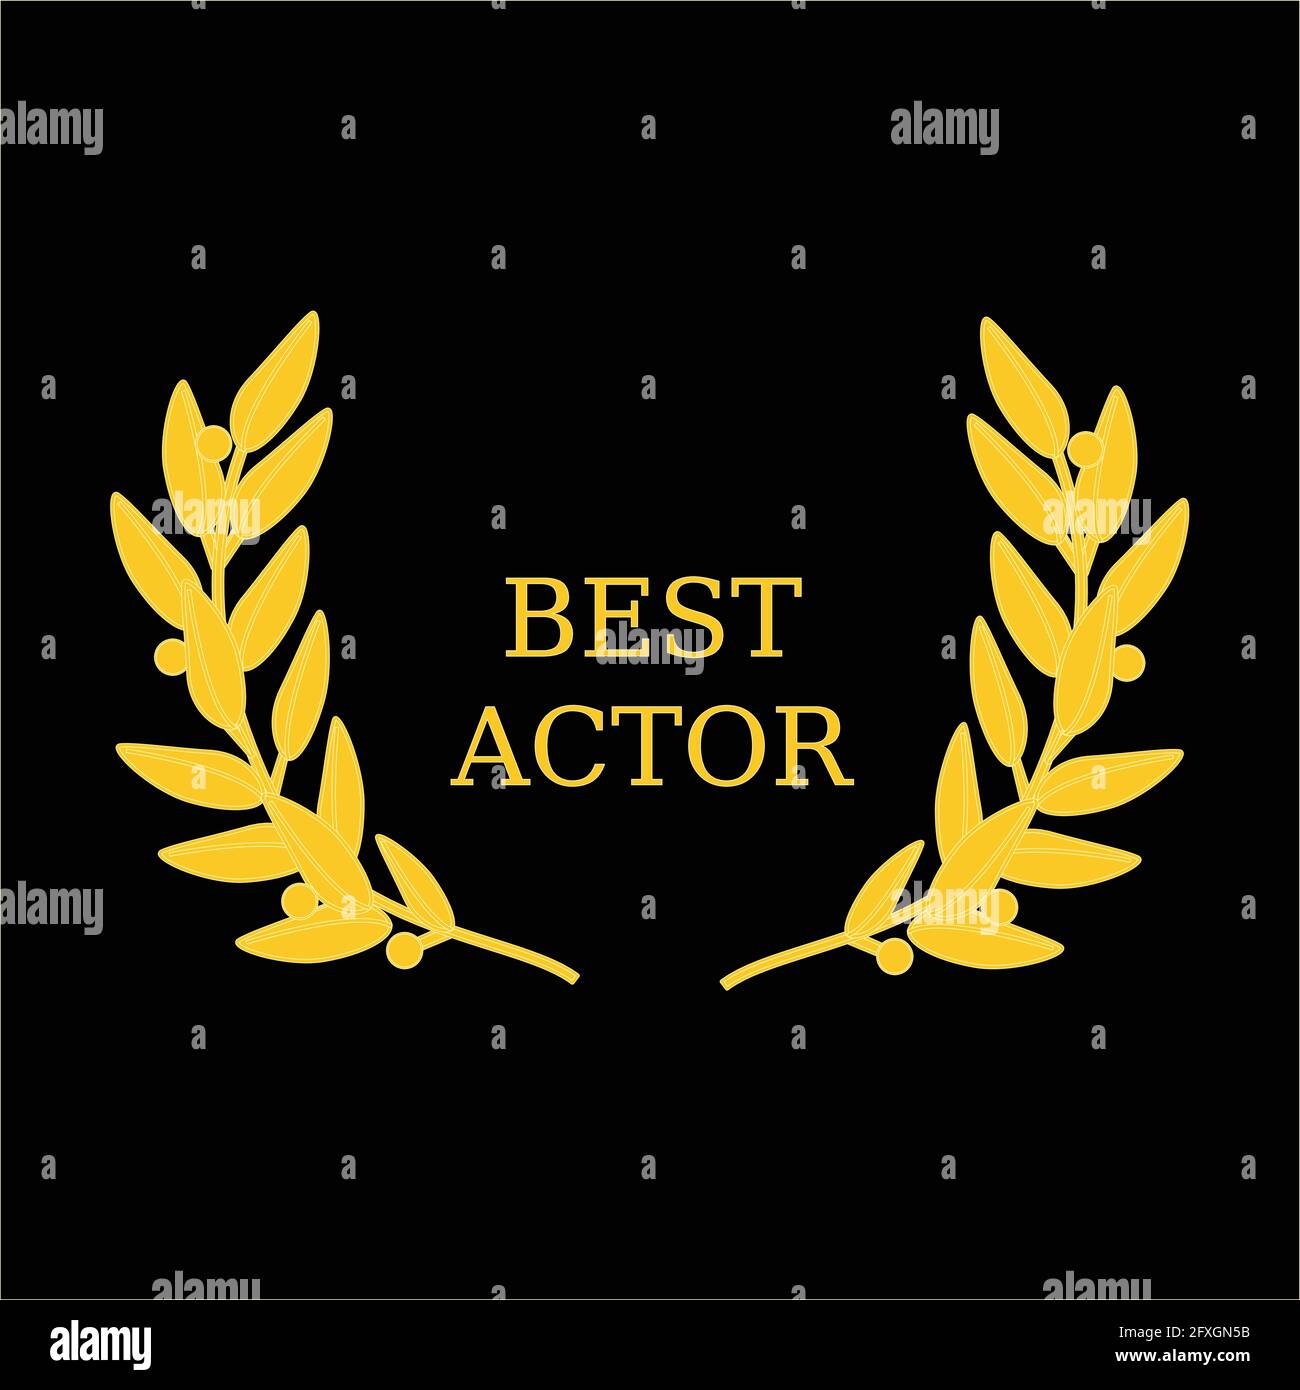 Vector illustration film award best actor laurel wreath Stock Vector